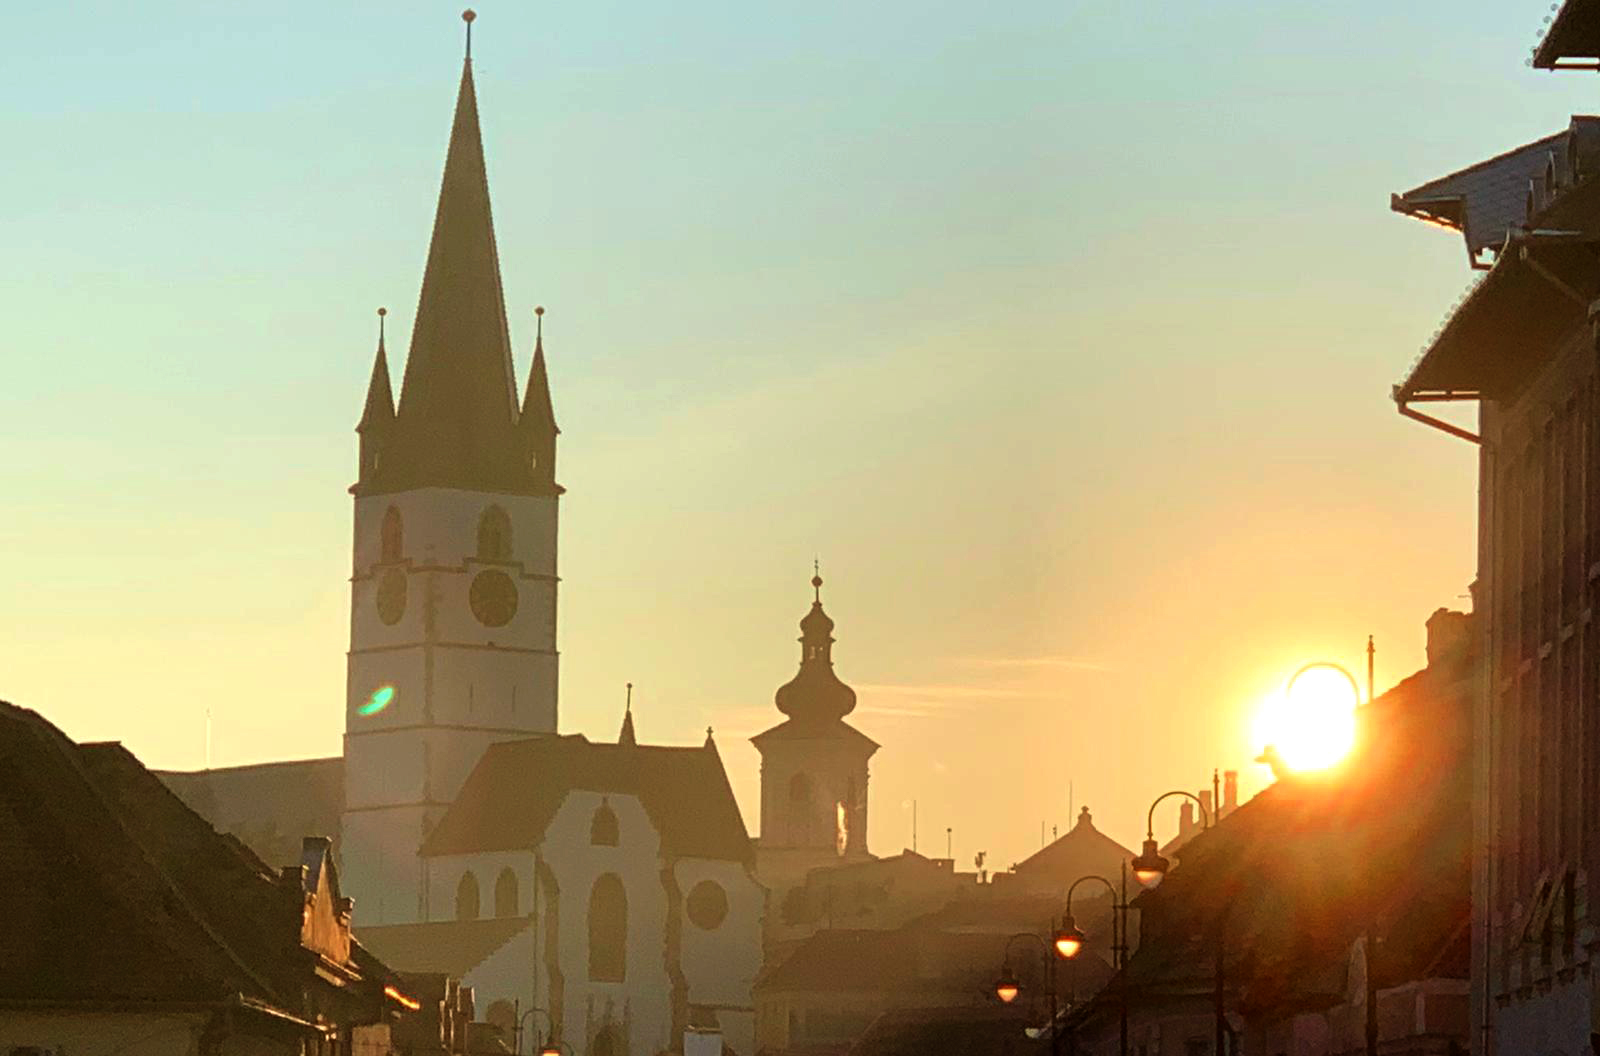 Incidența în municipiul Sibiu scade sub 4 la mie. 6,6 este cea mai ridicată incidență din județ